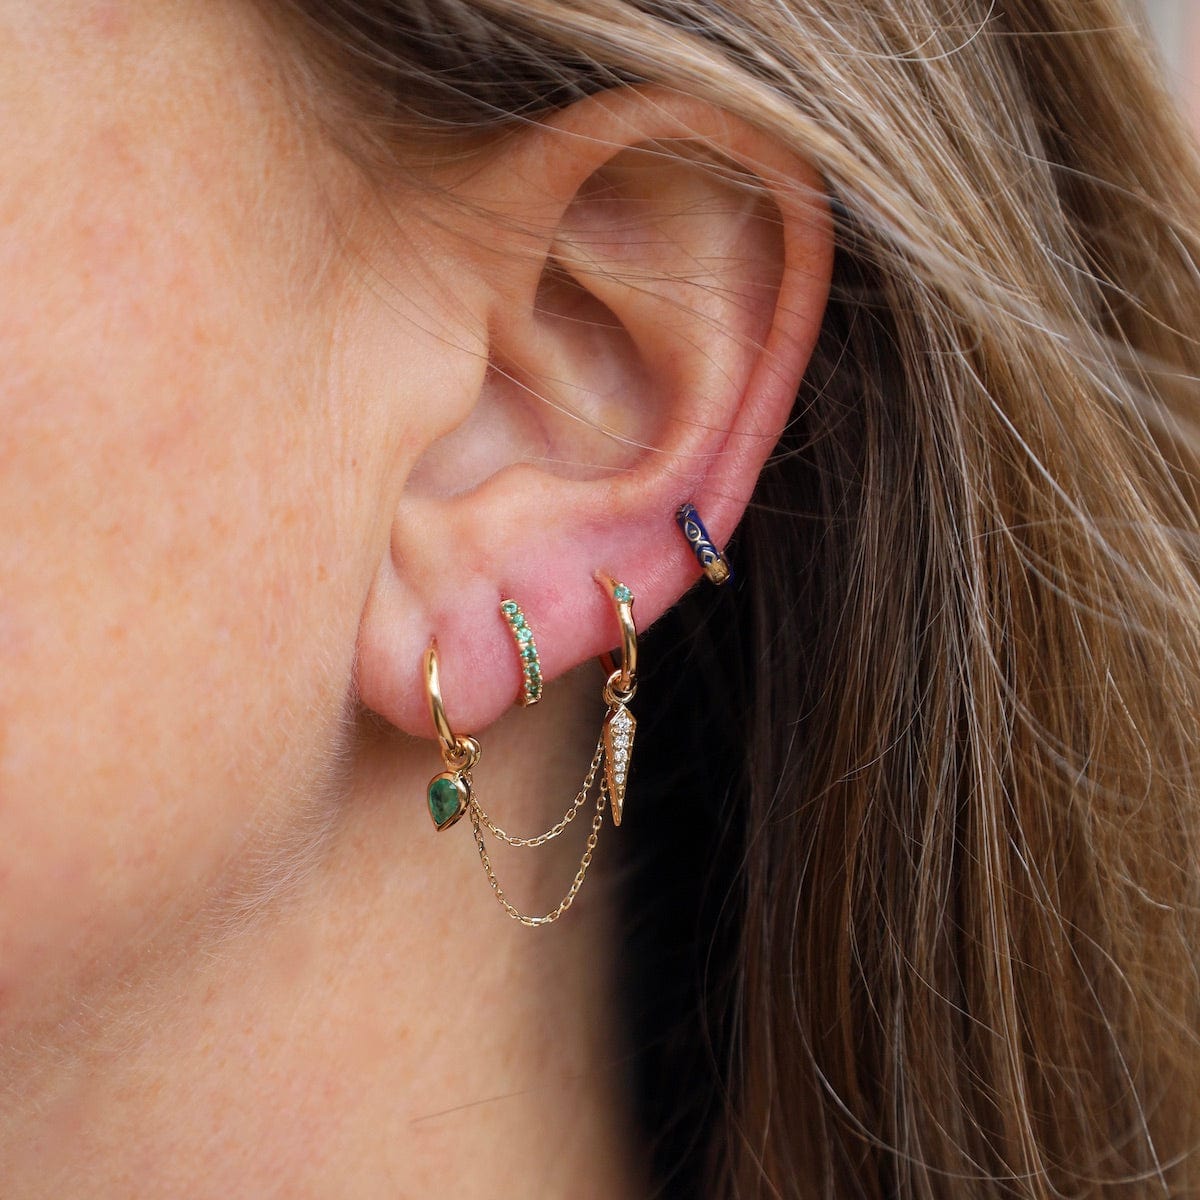 EAR-9K Original Clicker Hoop + Pear Cut Emerald Plaque - Single Earring